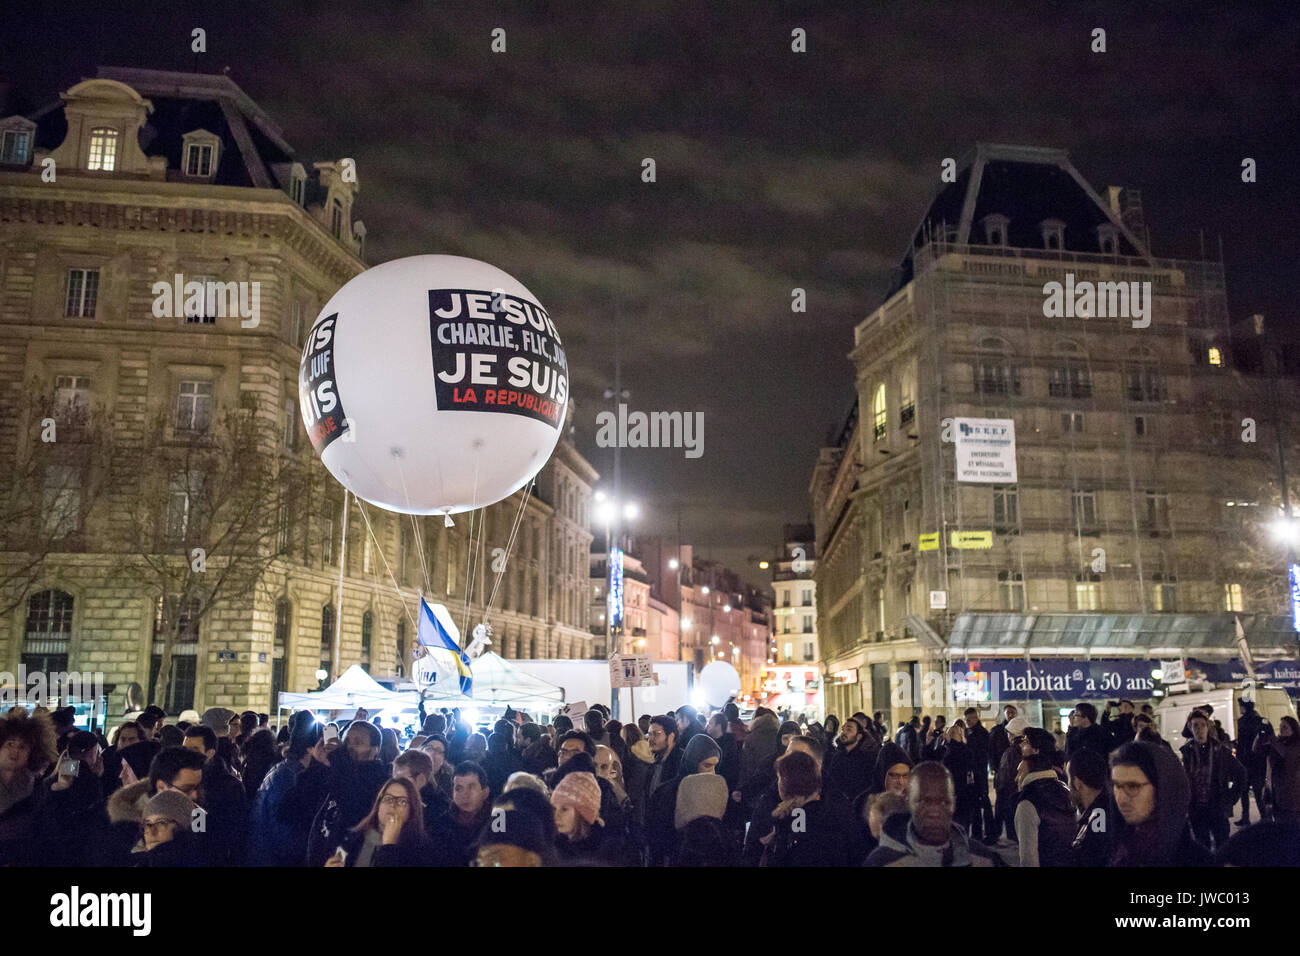 Ballon je suis Charlie, juif, flic Place de la Republique. Hommage an die Opfer von Charlie Hebdo Tötung in Paris der 7. Januar 2015. Stockfoto